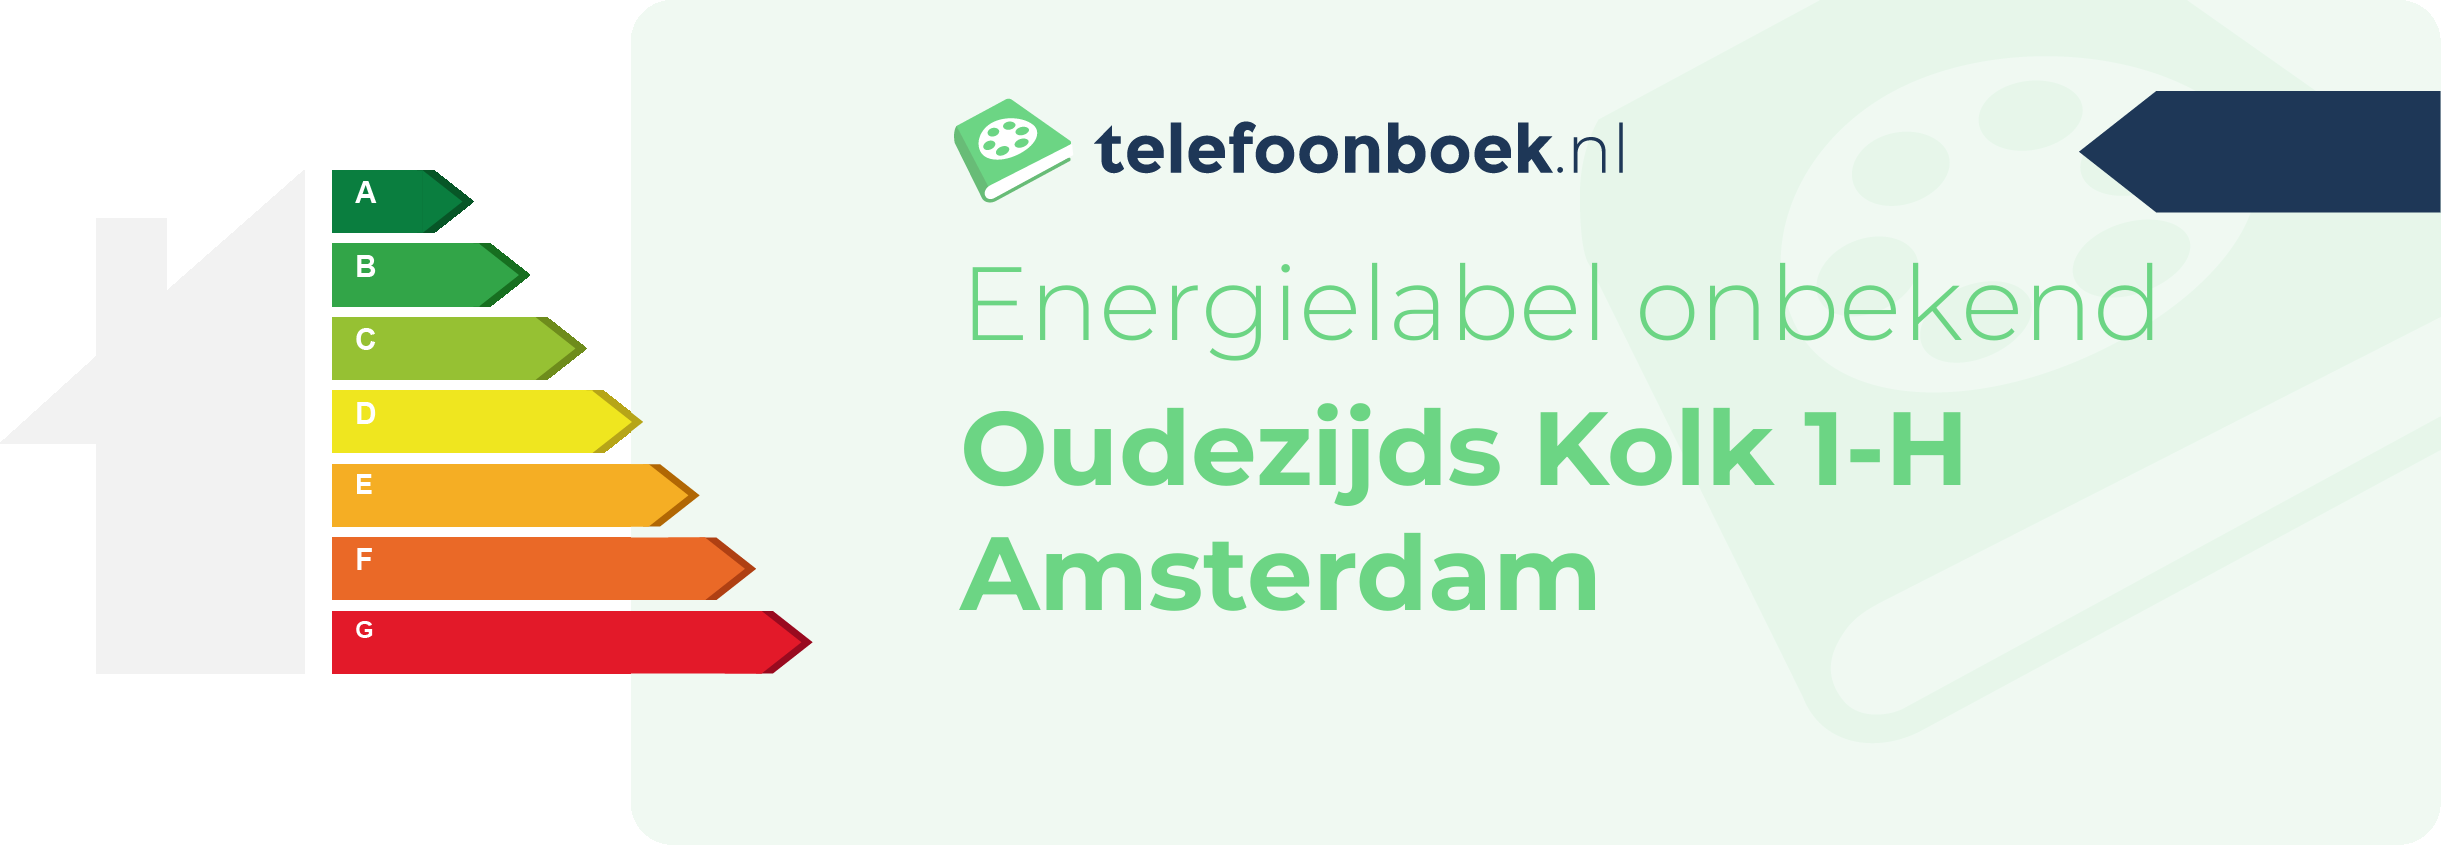 Energielabel Oudezijds Kolk 1-H Amsterdam